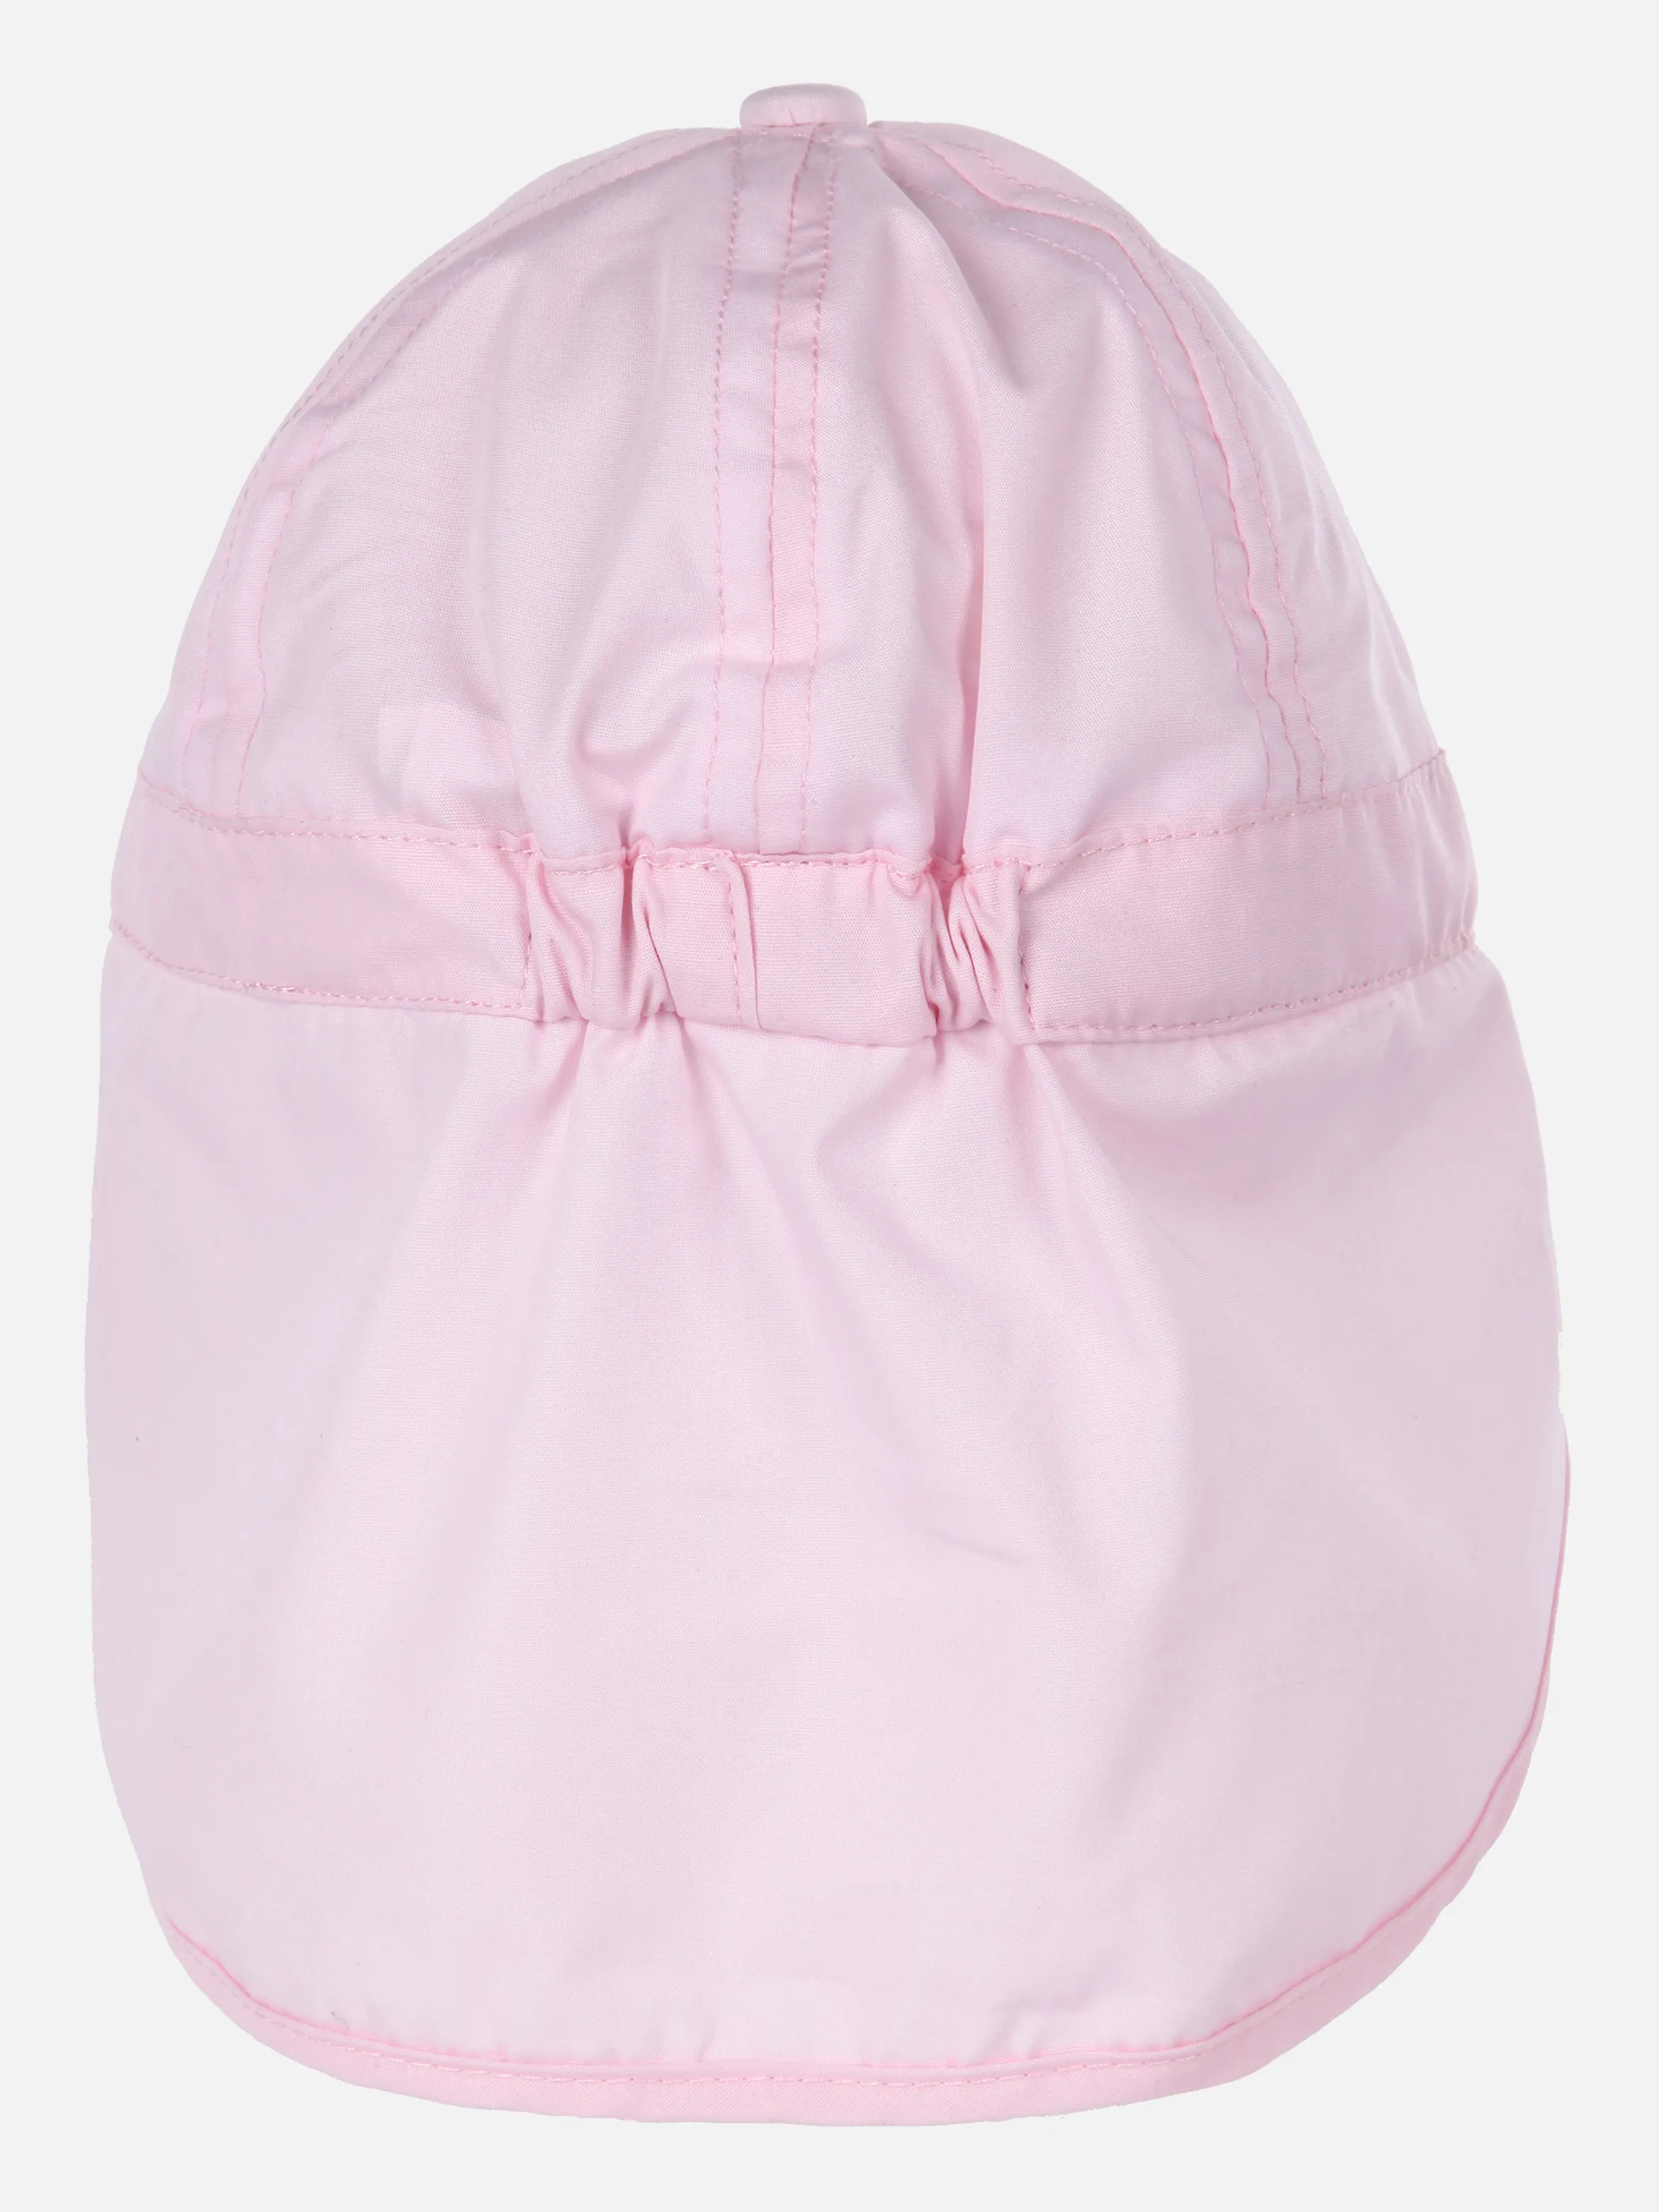 Bubble Gum BG Mütze mit Nackenschutz in Rosa 851545 ROSA 3